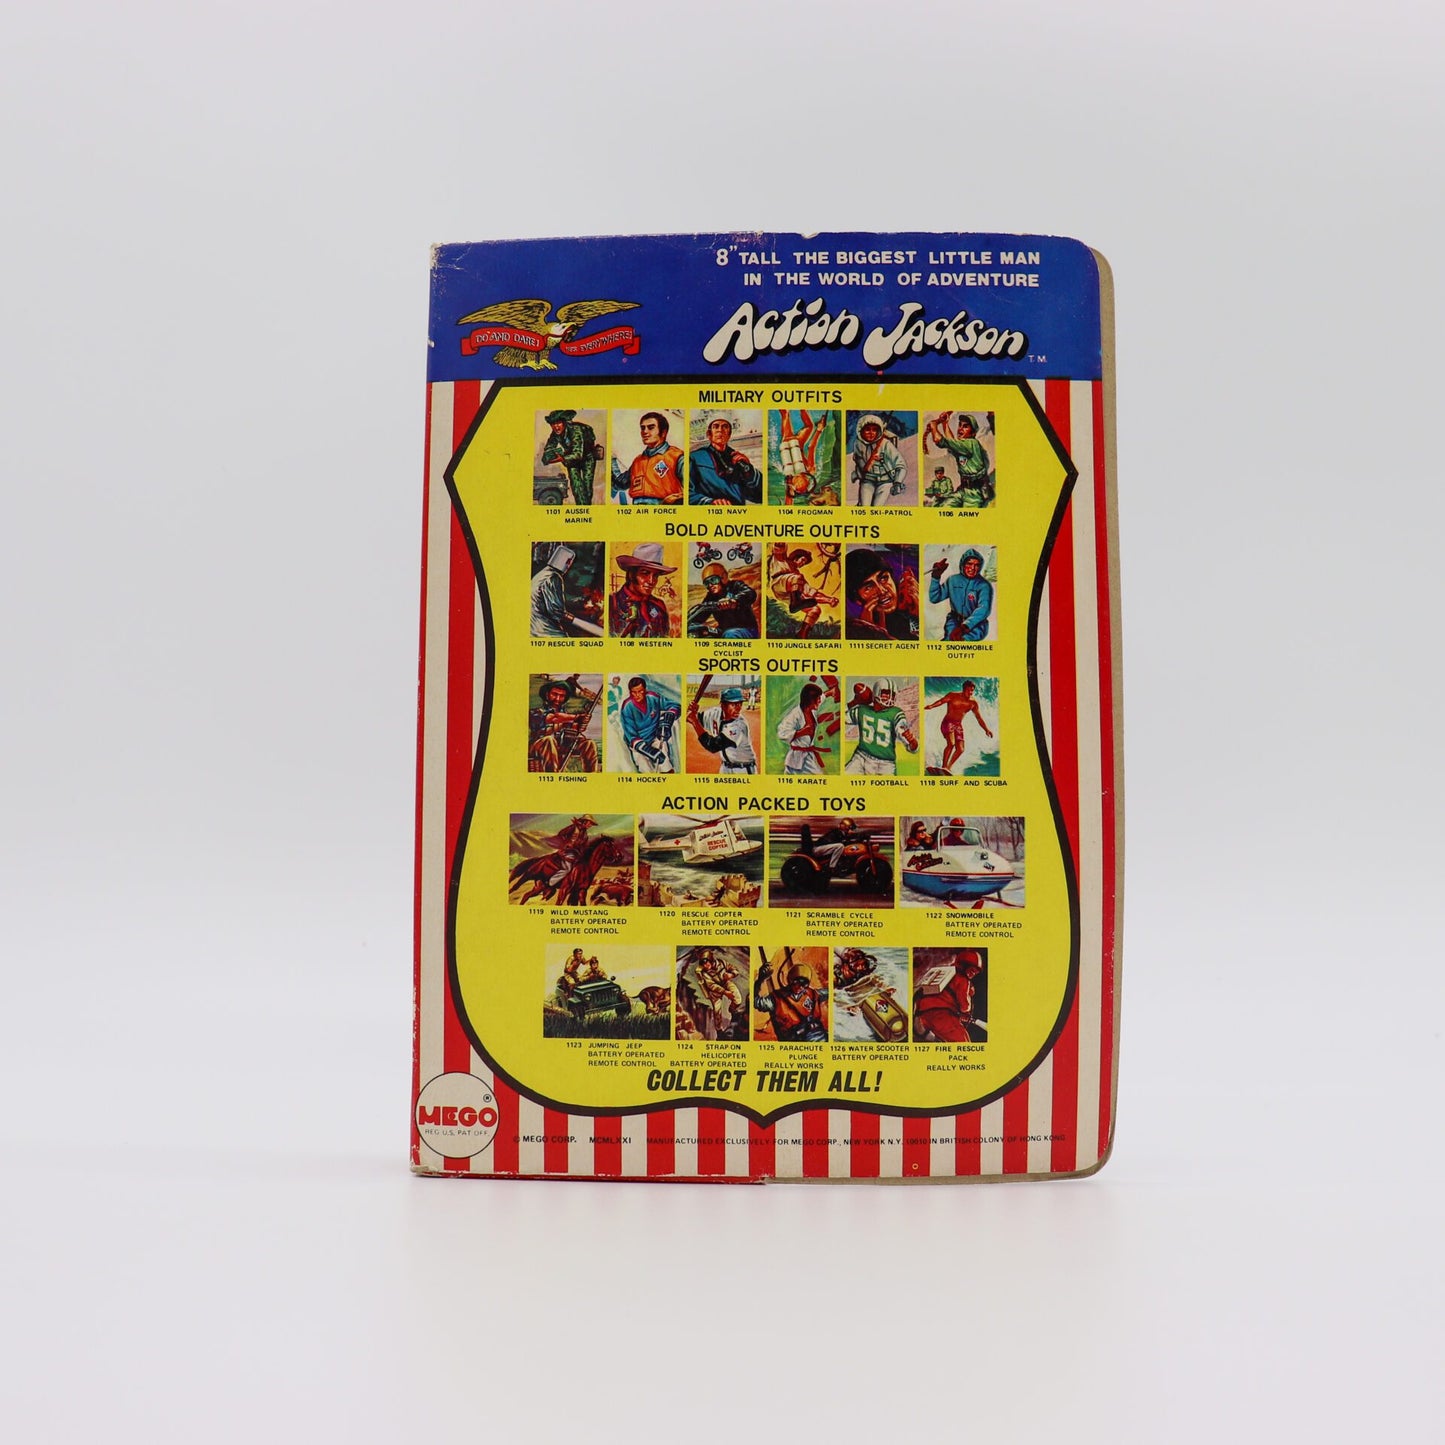 1971 Mego Action Jackson 8” Action Figure, Mint Figure in Original Box